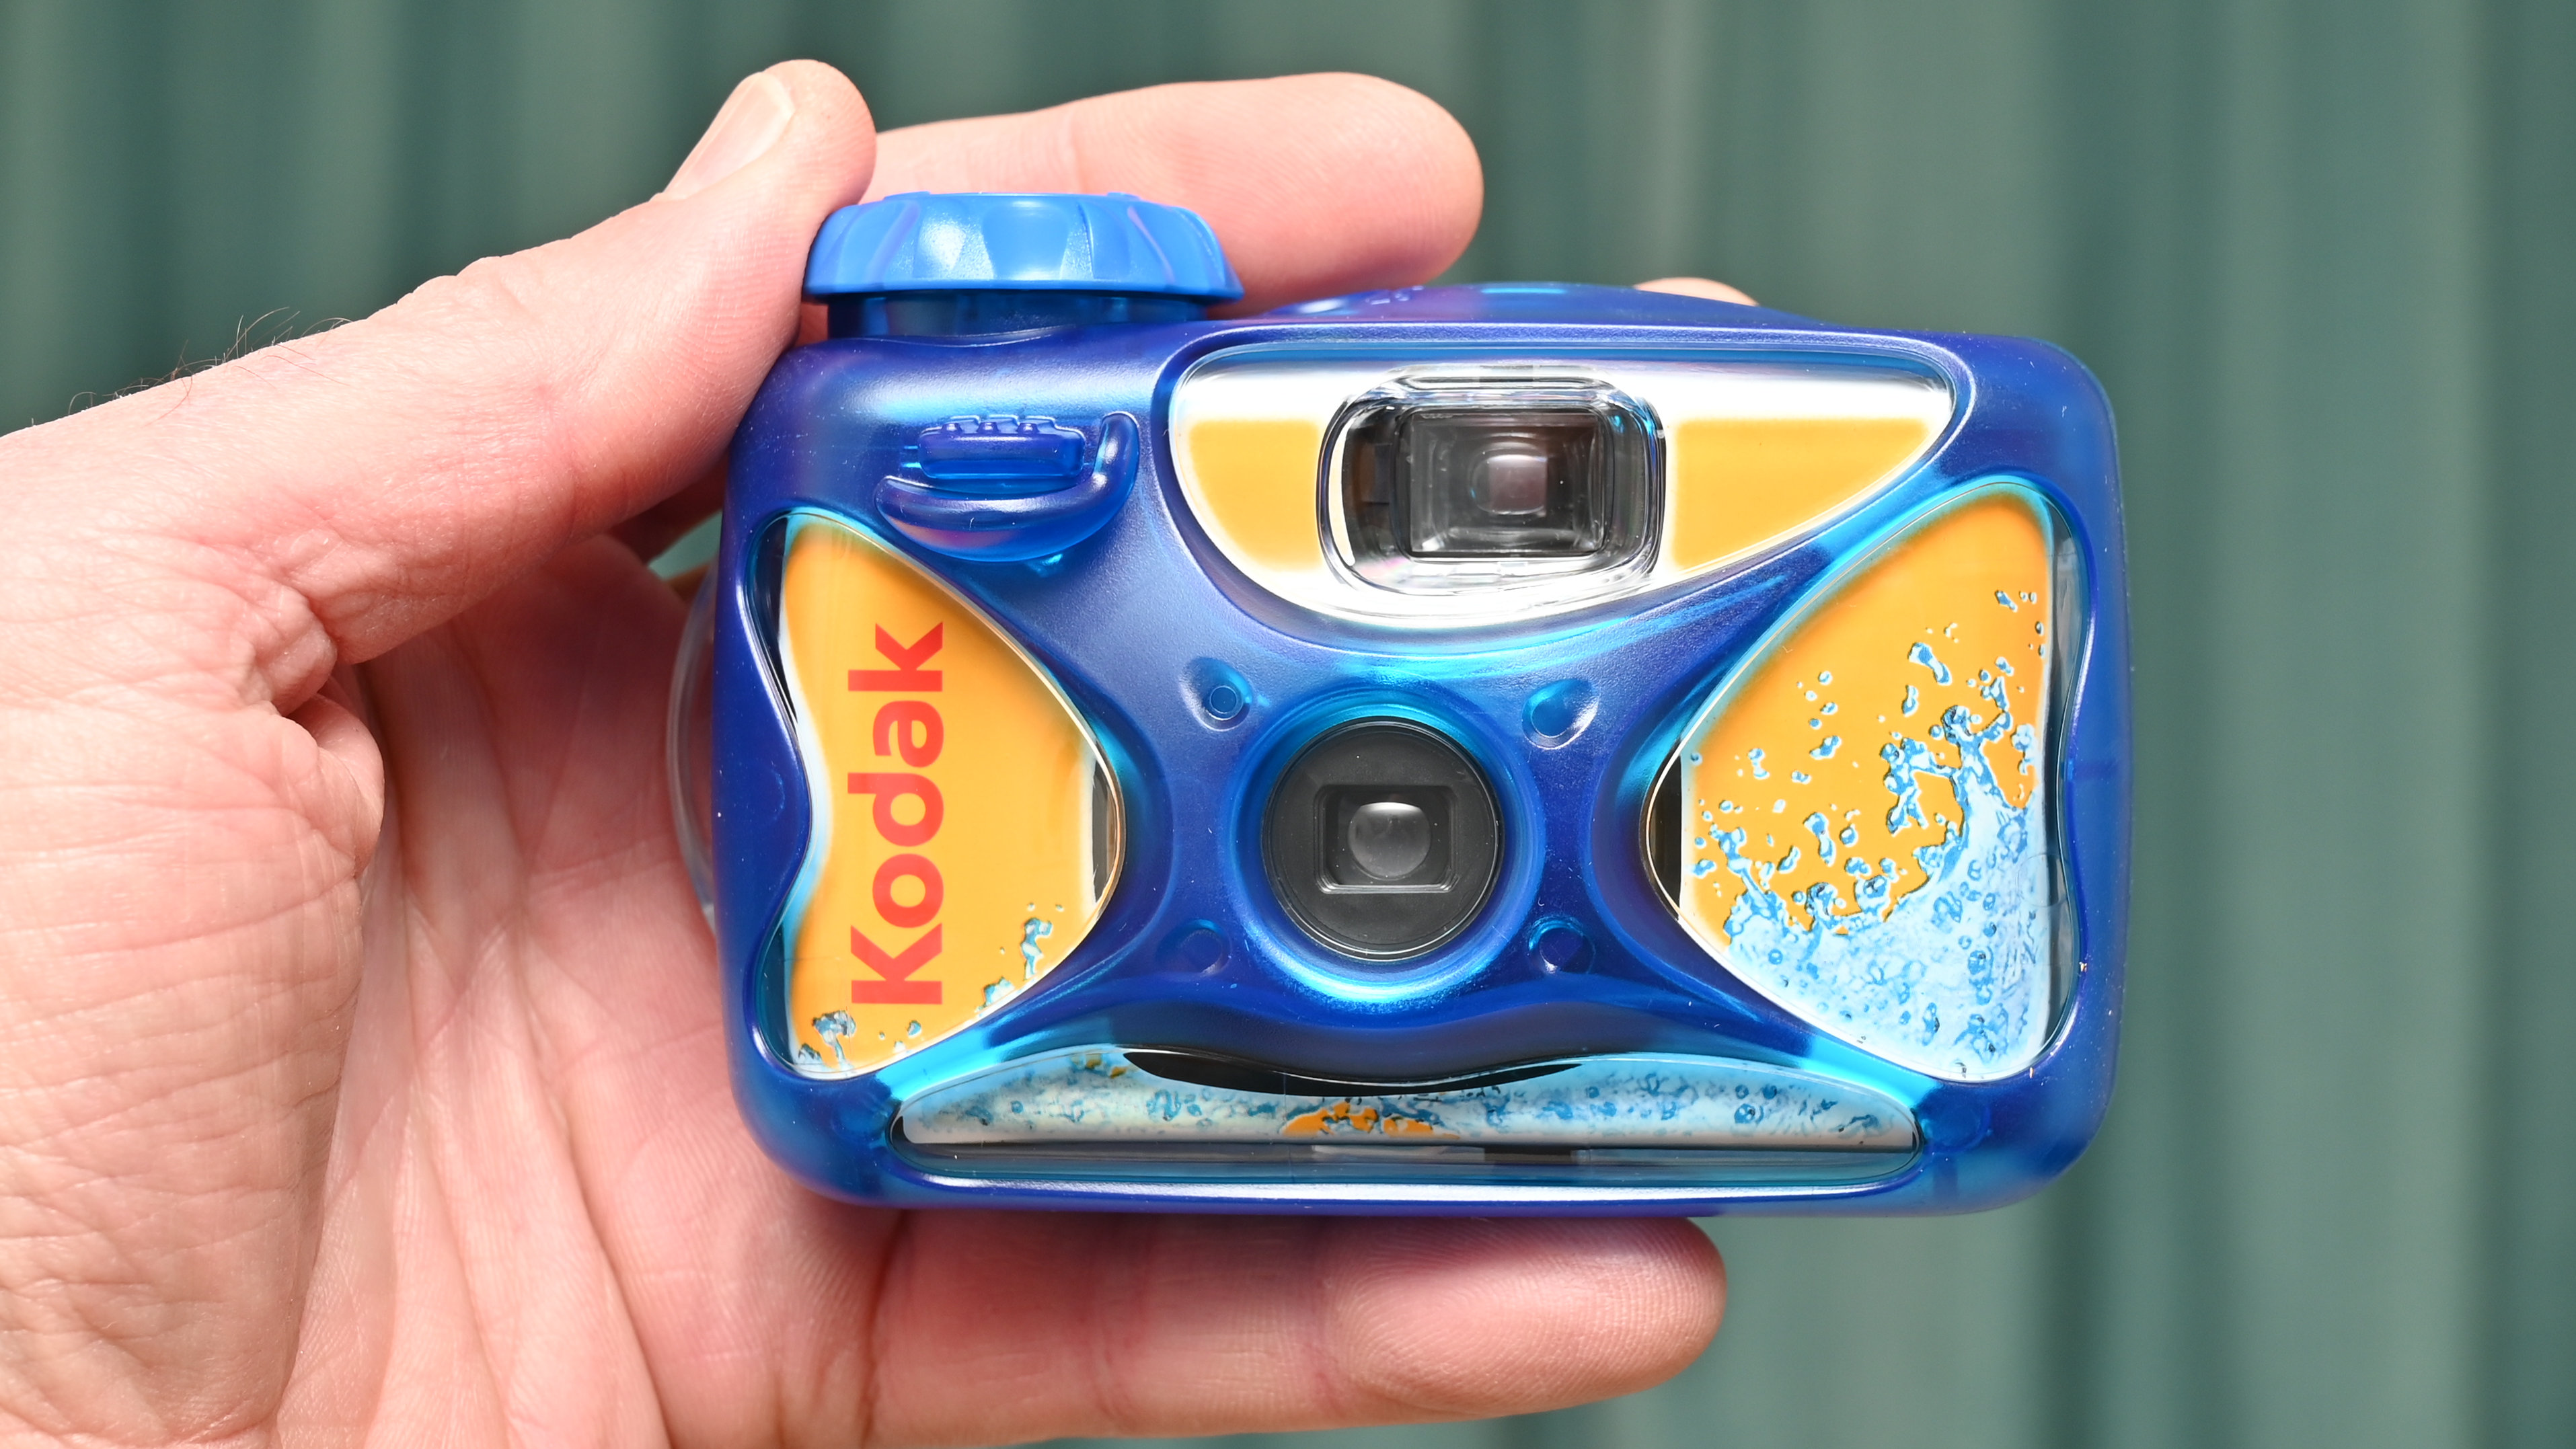 كاميرا كوداك سبورت ذات الاستخدام الواحد